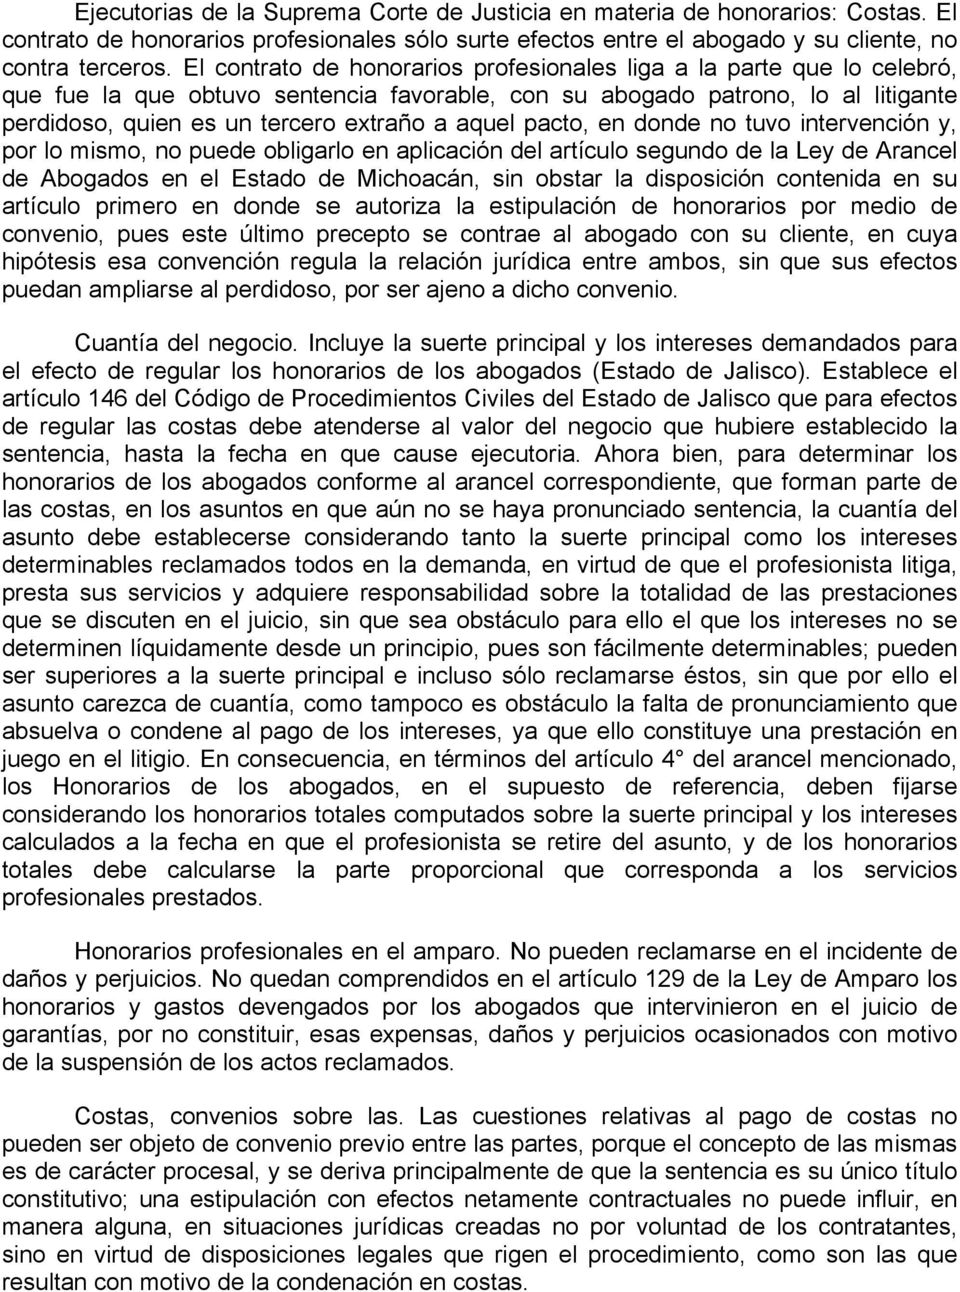 aquel pacto, en donde no tuvo intervención y, por lo mismo, no puede obligarlo en aplicación del artículo segundo de la Ley de Arancel de Abogados en el Estado de Michoacán, sin obstar la disposición